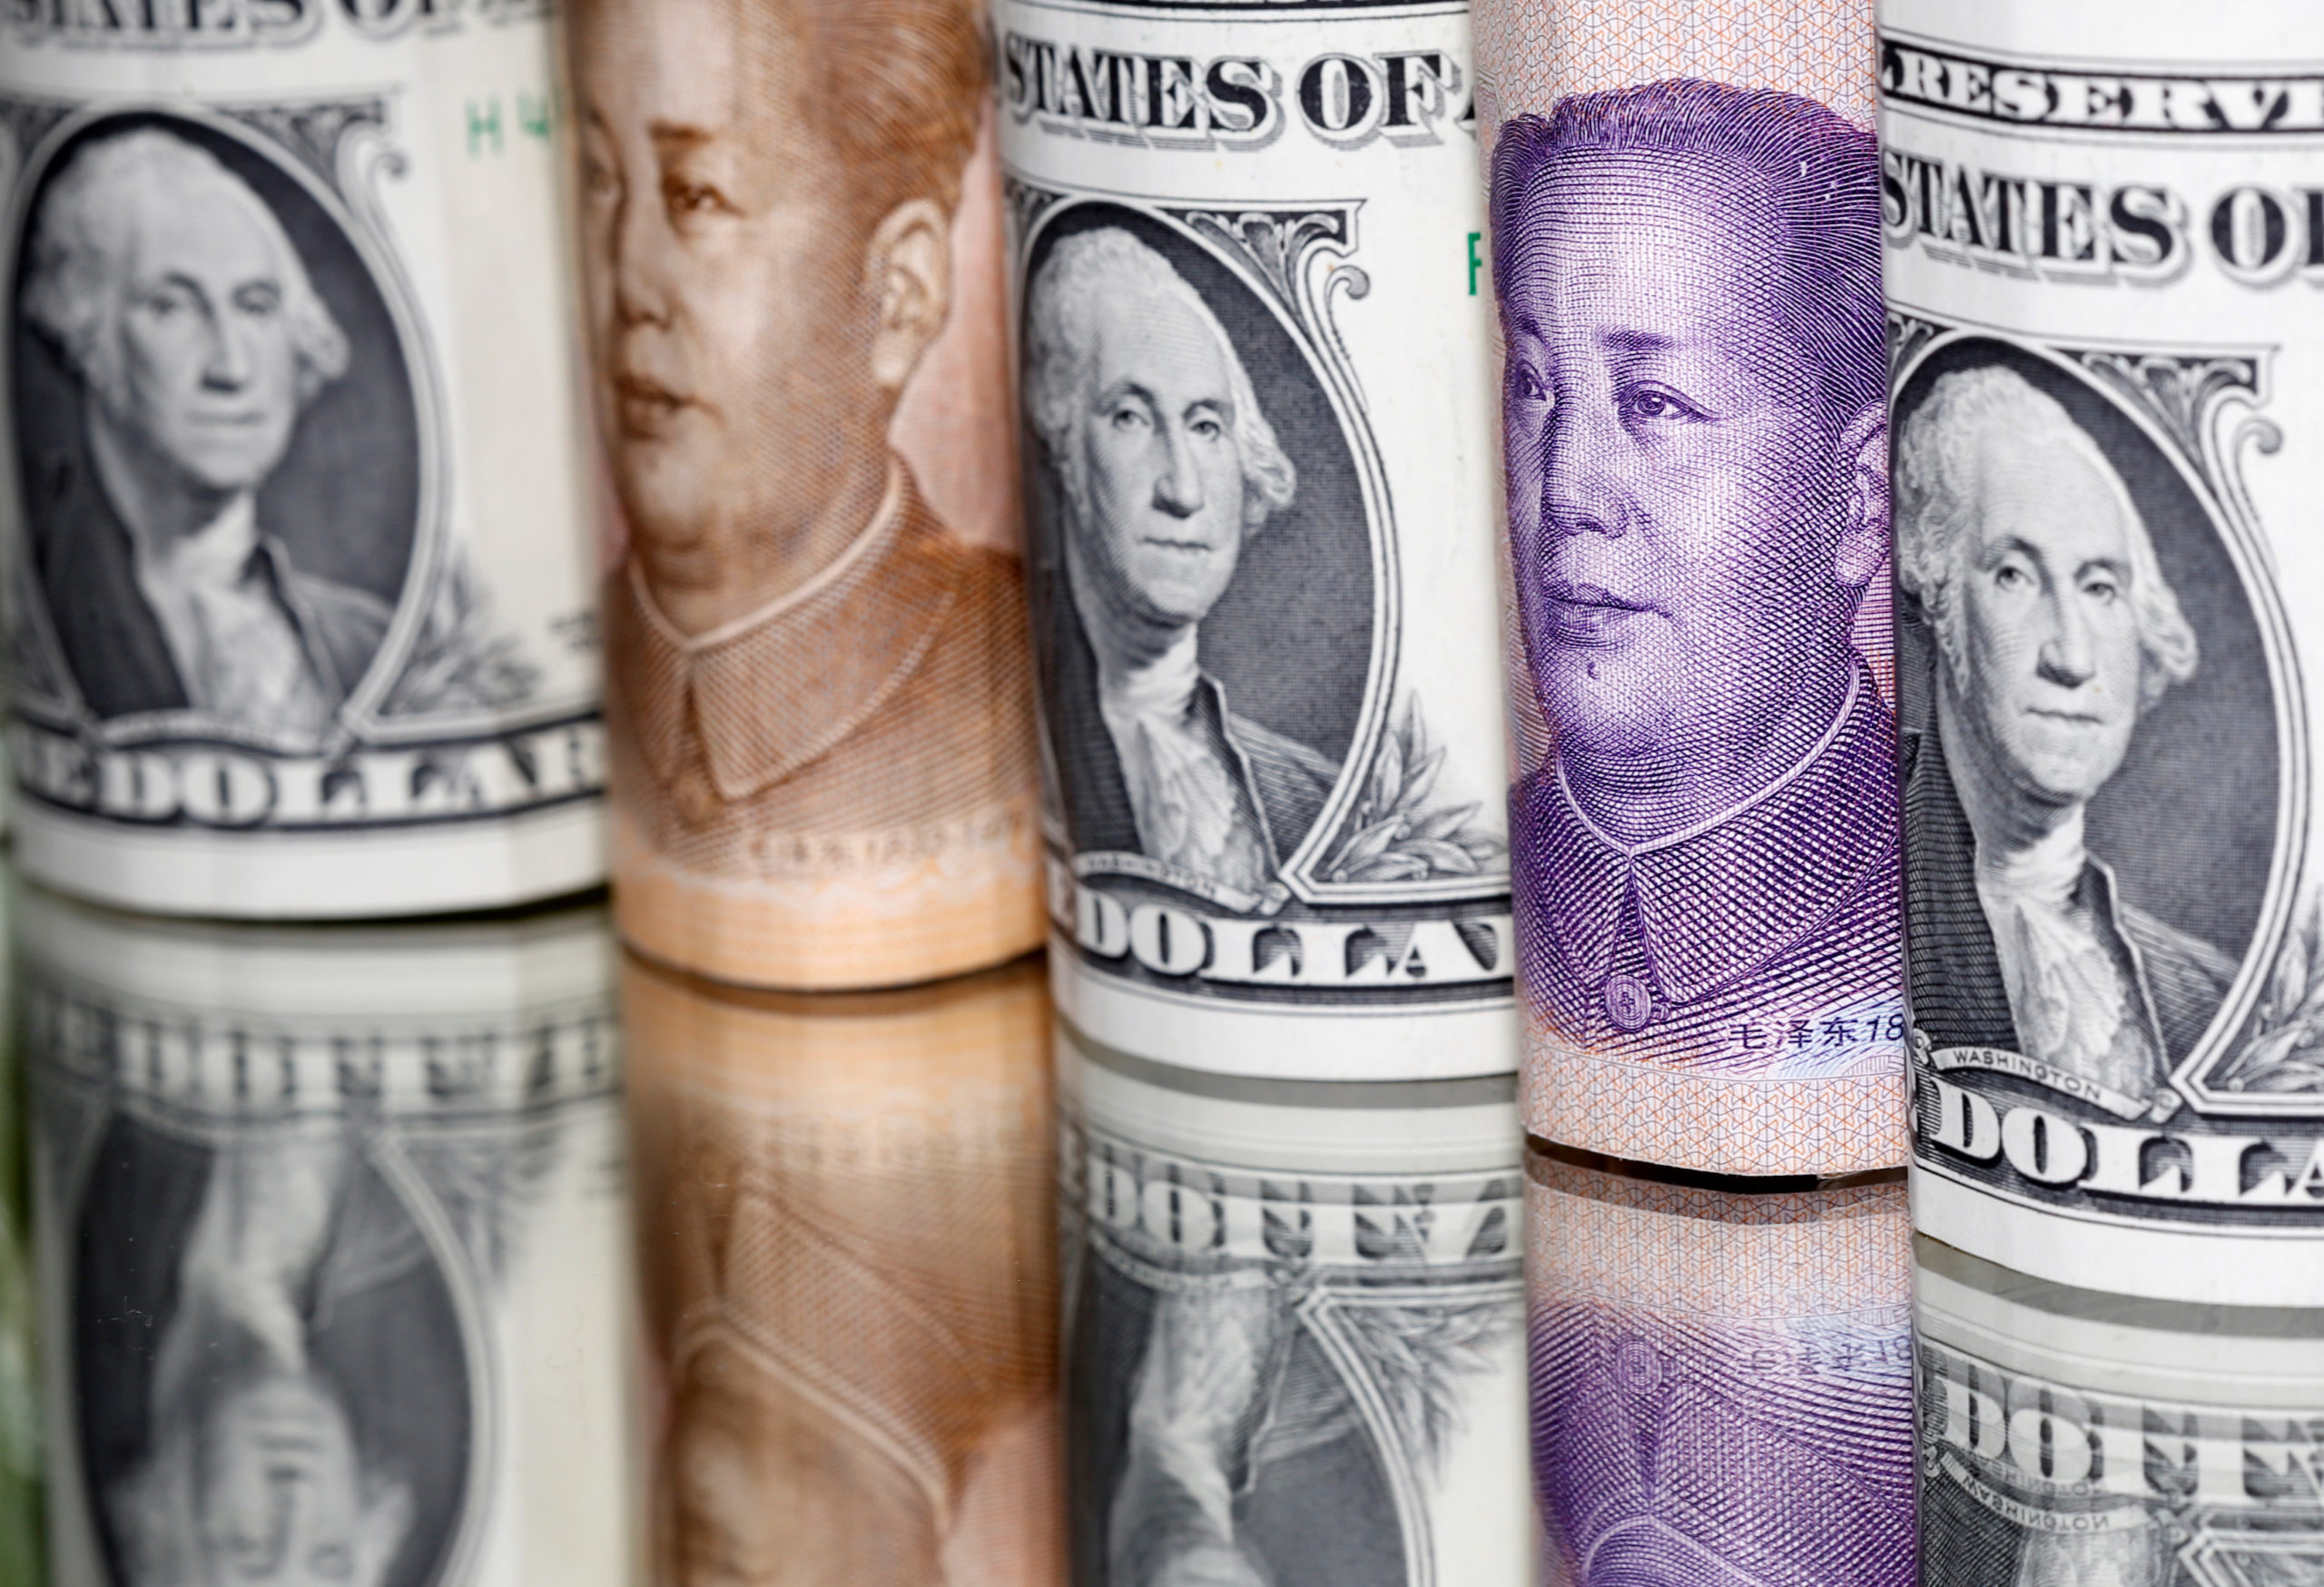 Dólar, swap con yuanes y renovación de vencimientos, "se están terminando los resortes a corto tiempo” sostuvo el contador Fasano imagen-1